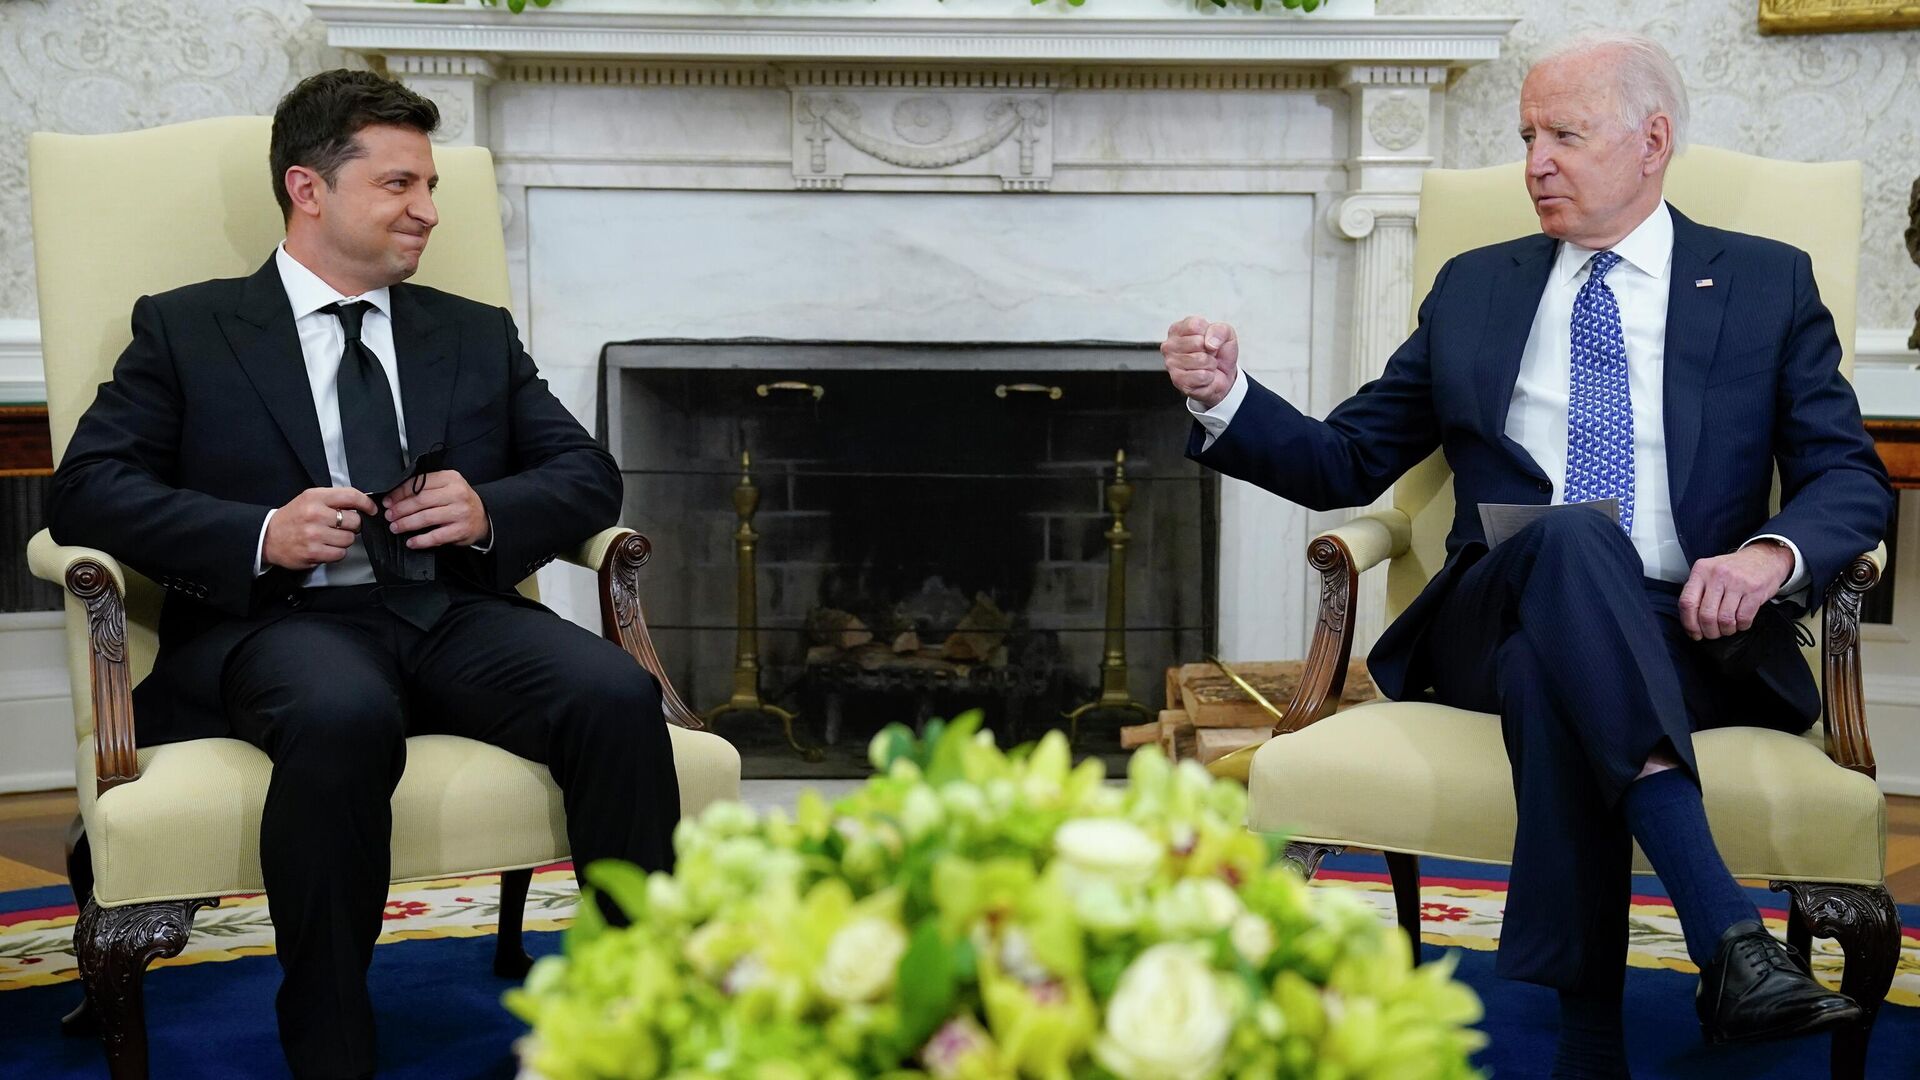 Президент США Джо Байден и президент Украины Владимир Зеленский в Овальном кабинете Белого дома, 1 сентября 2021 года - ИноСМИ, 1920, 24.10.2022